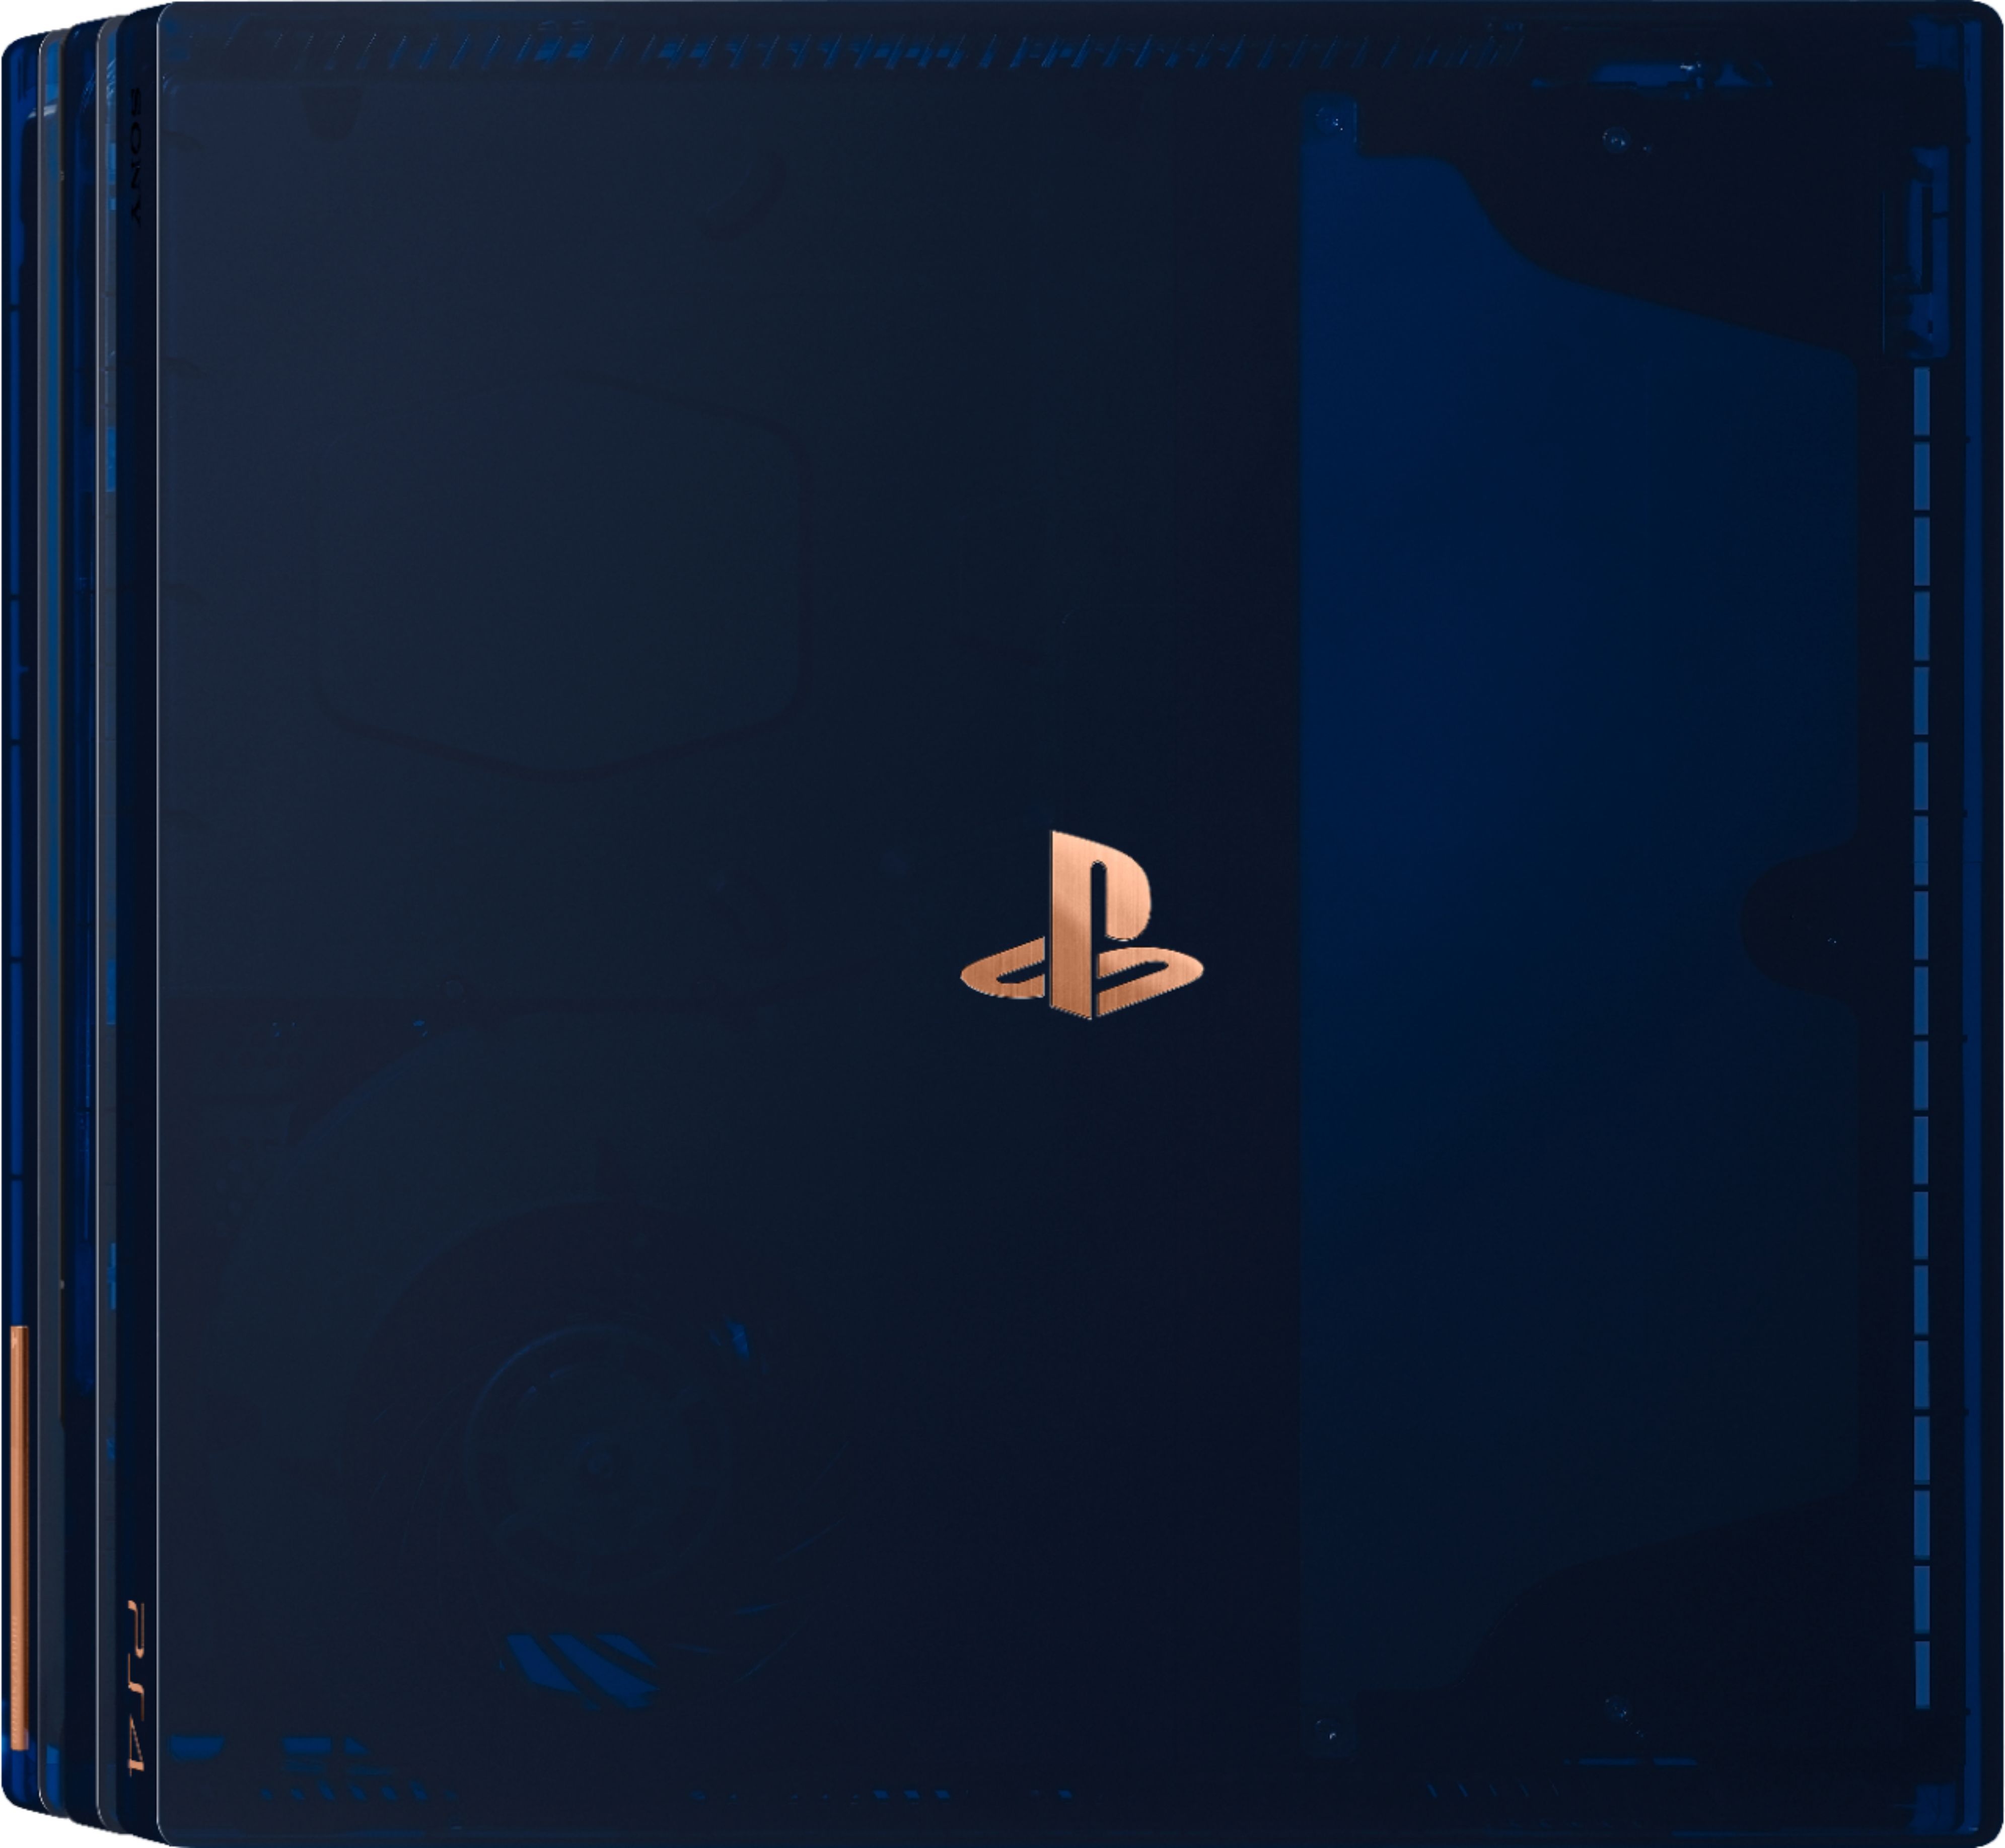 テレビ/映像機器 その他 Best Buy: Sony PlayStation 4 Pro 2TB 500 Million Limited Edition 